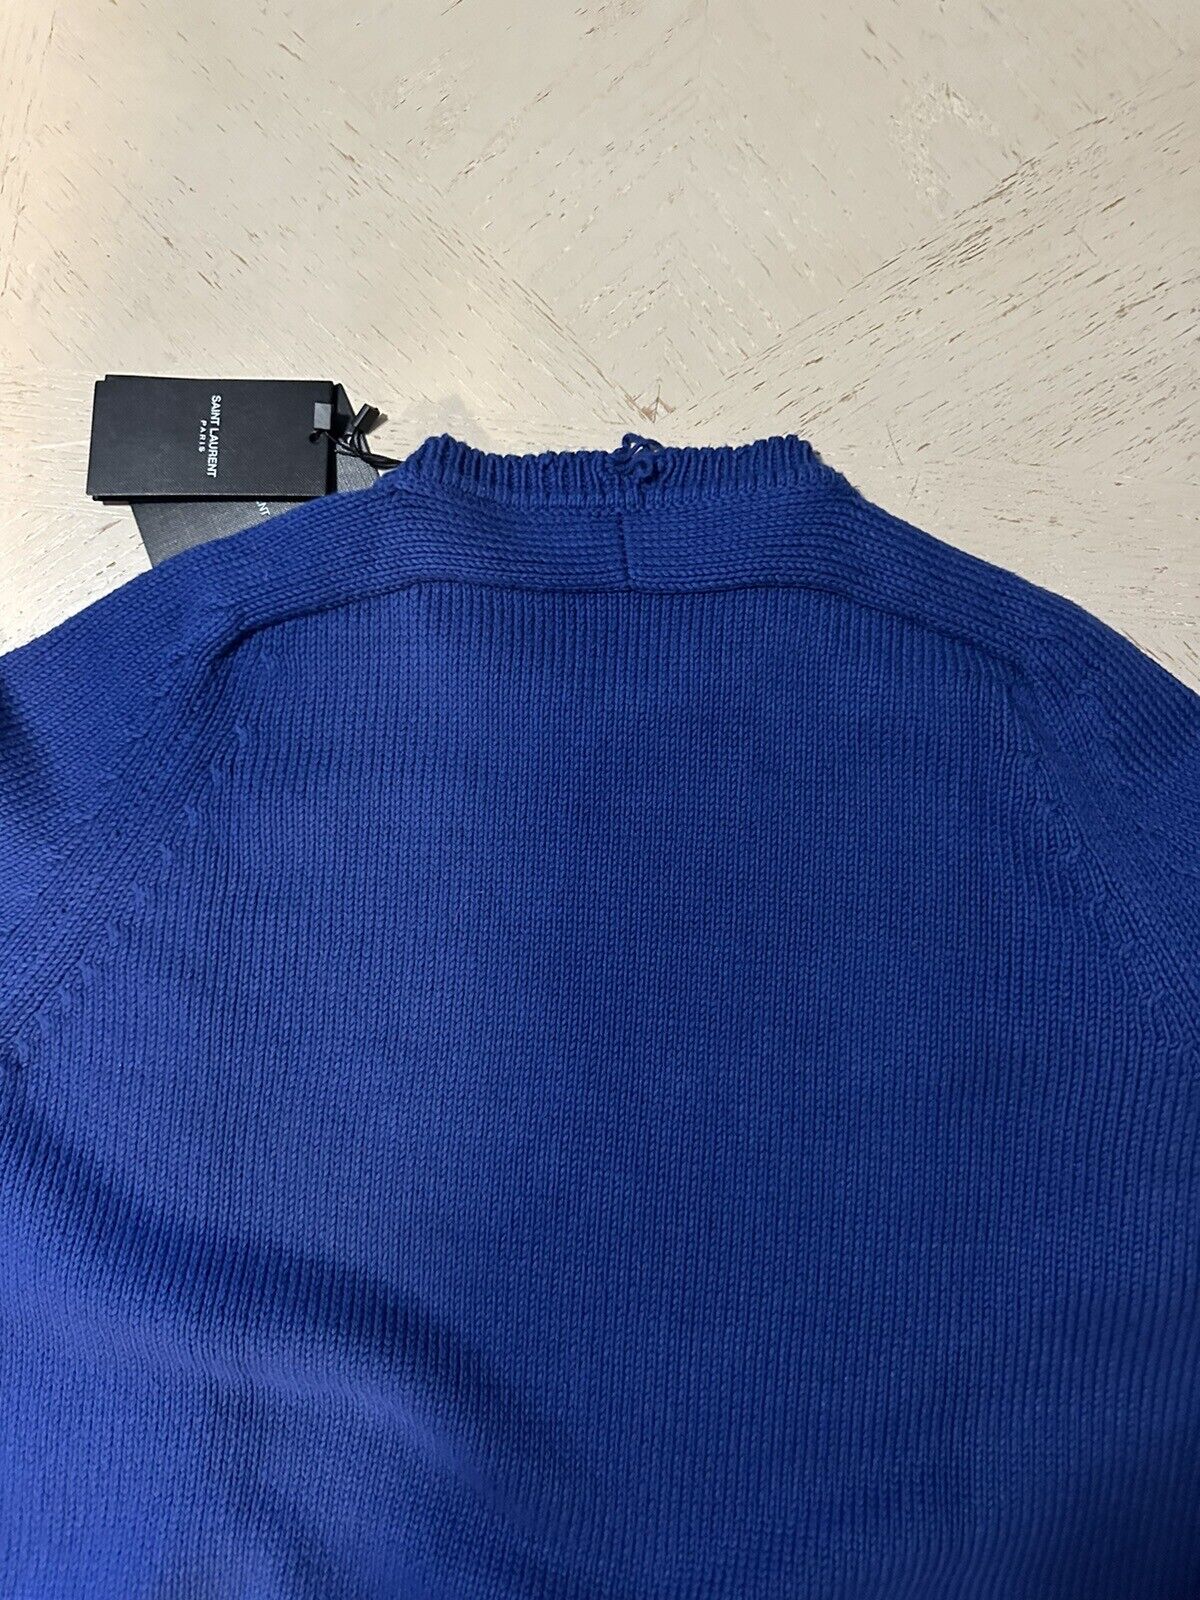 NWT $890 Мужской свитер с круглым вырезом Saint Laurent синий размер XXL Италия